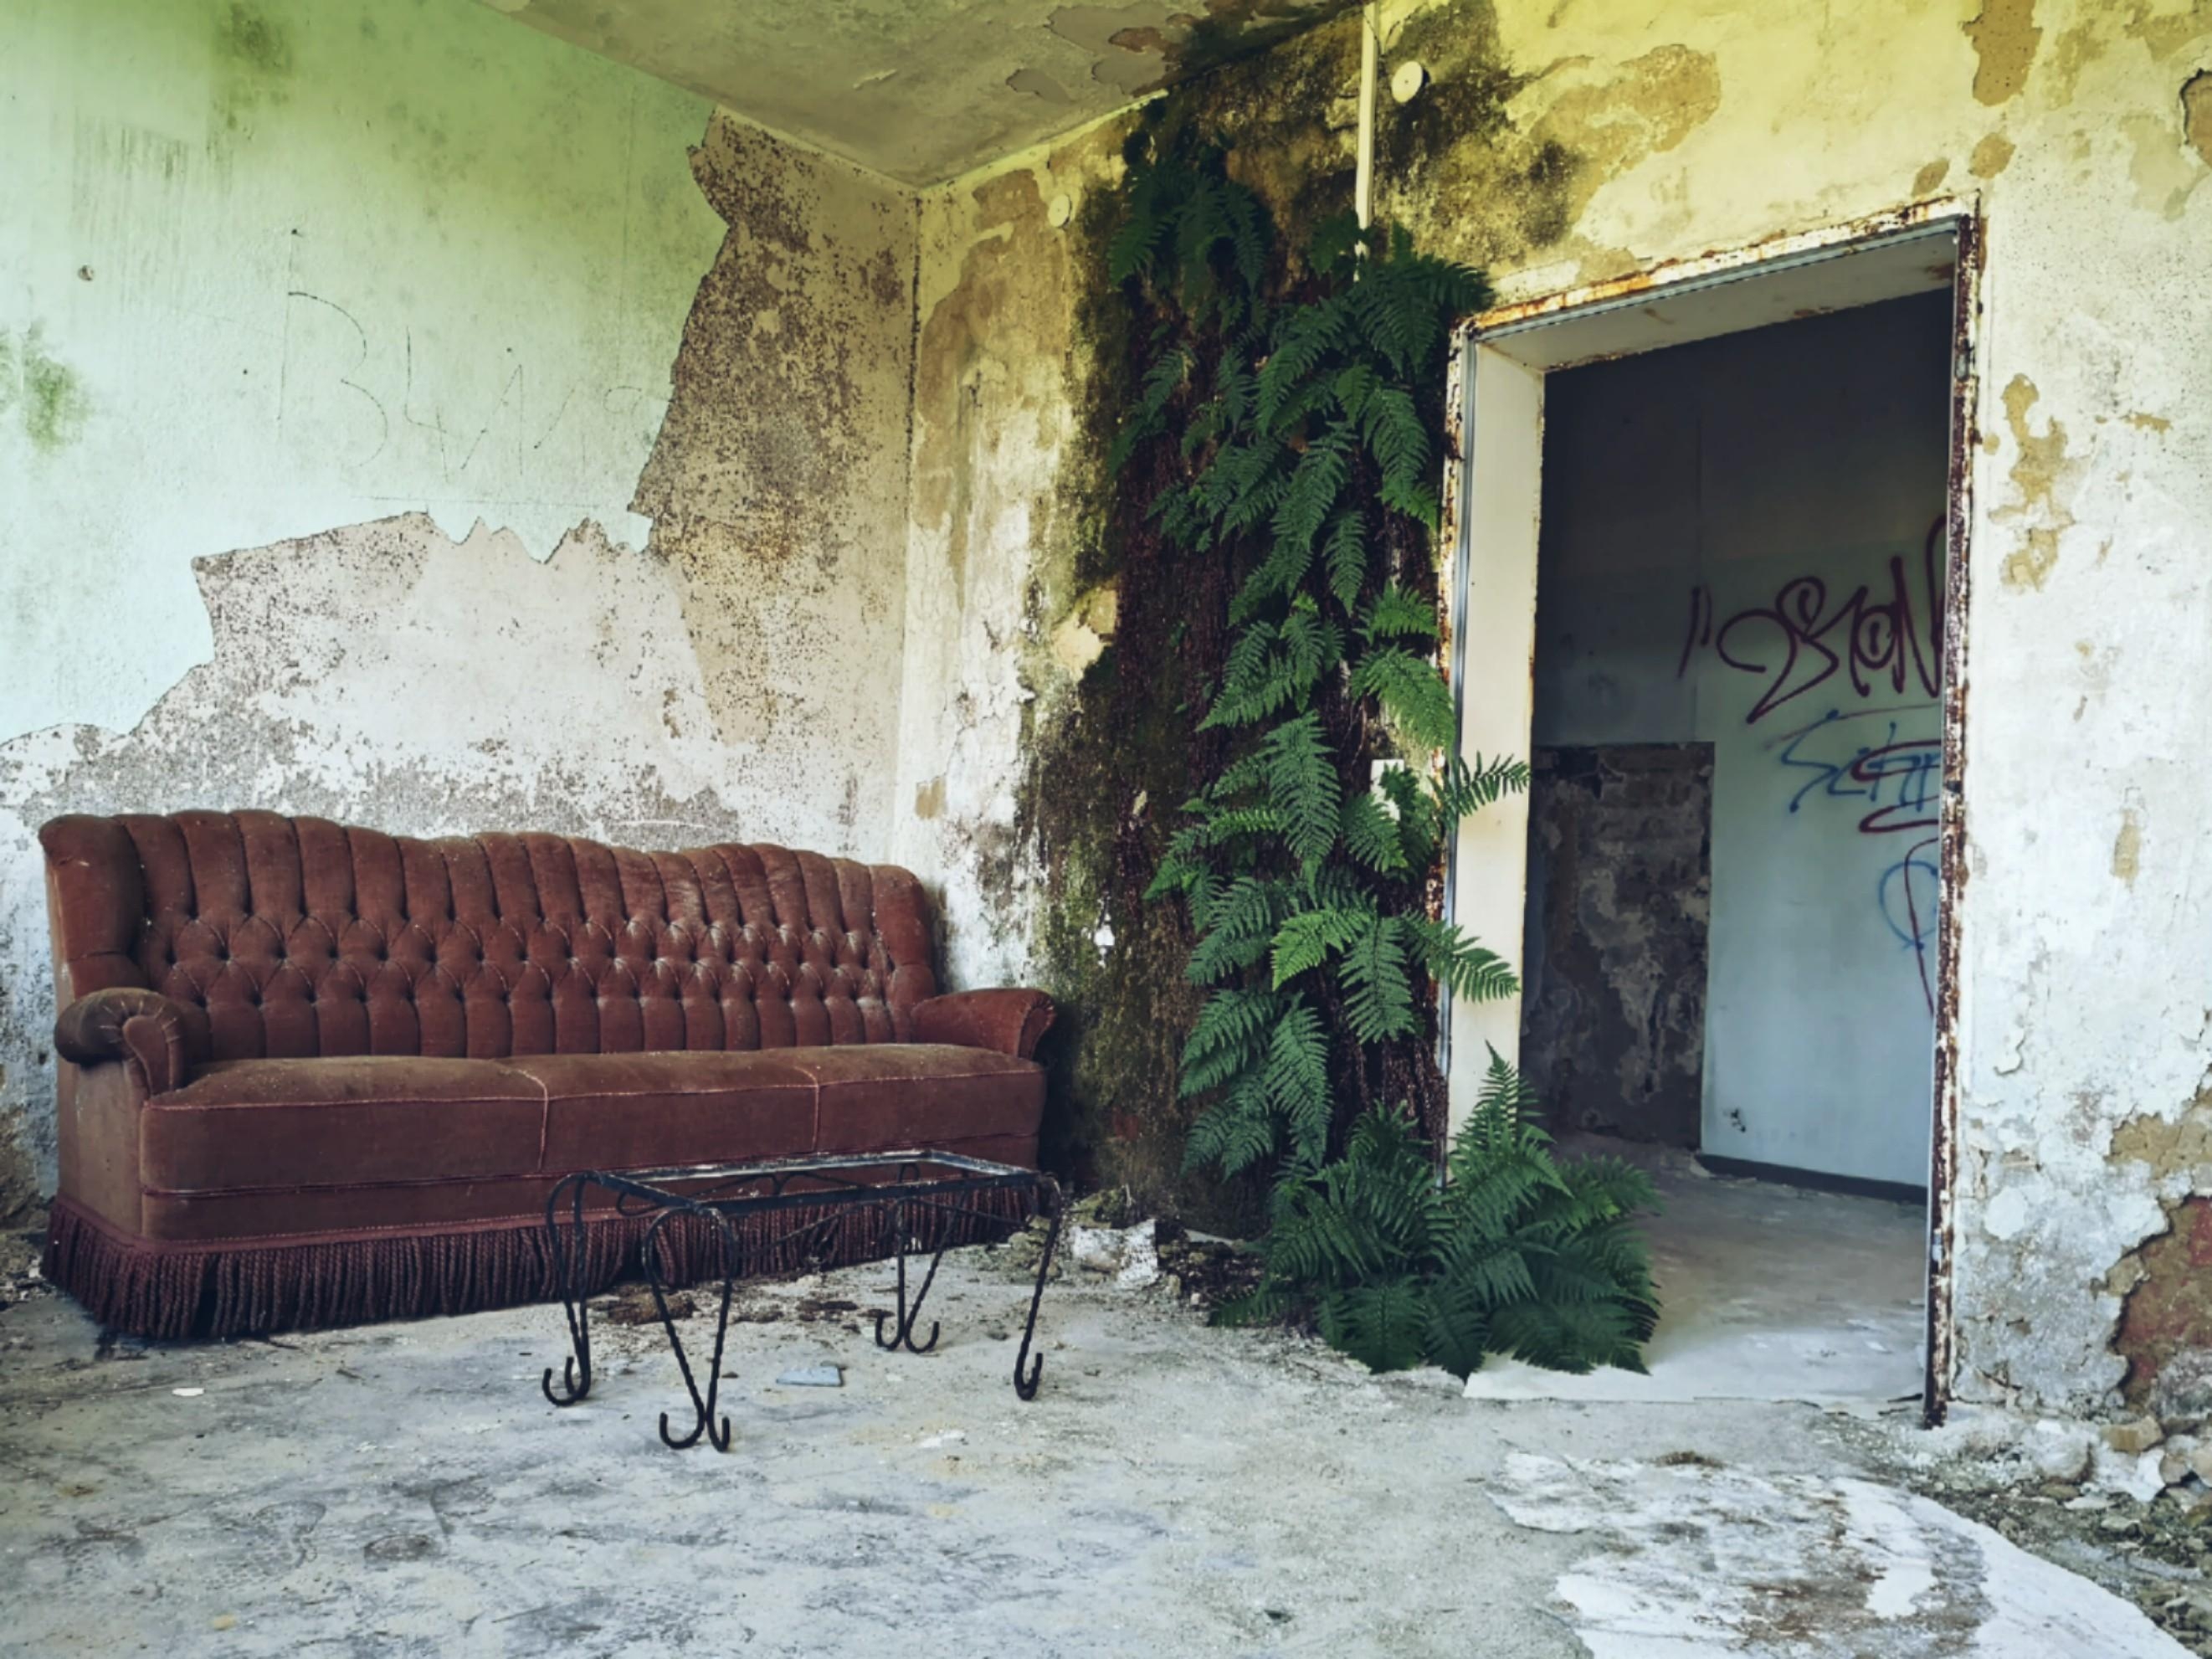 Eines meiner #Hobbys: Verlassene Orte erkunden und #fotografieren.
Der perfekte #Couchstyle 😉